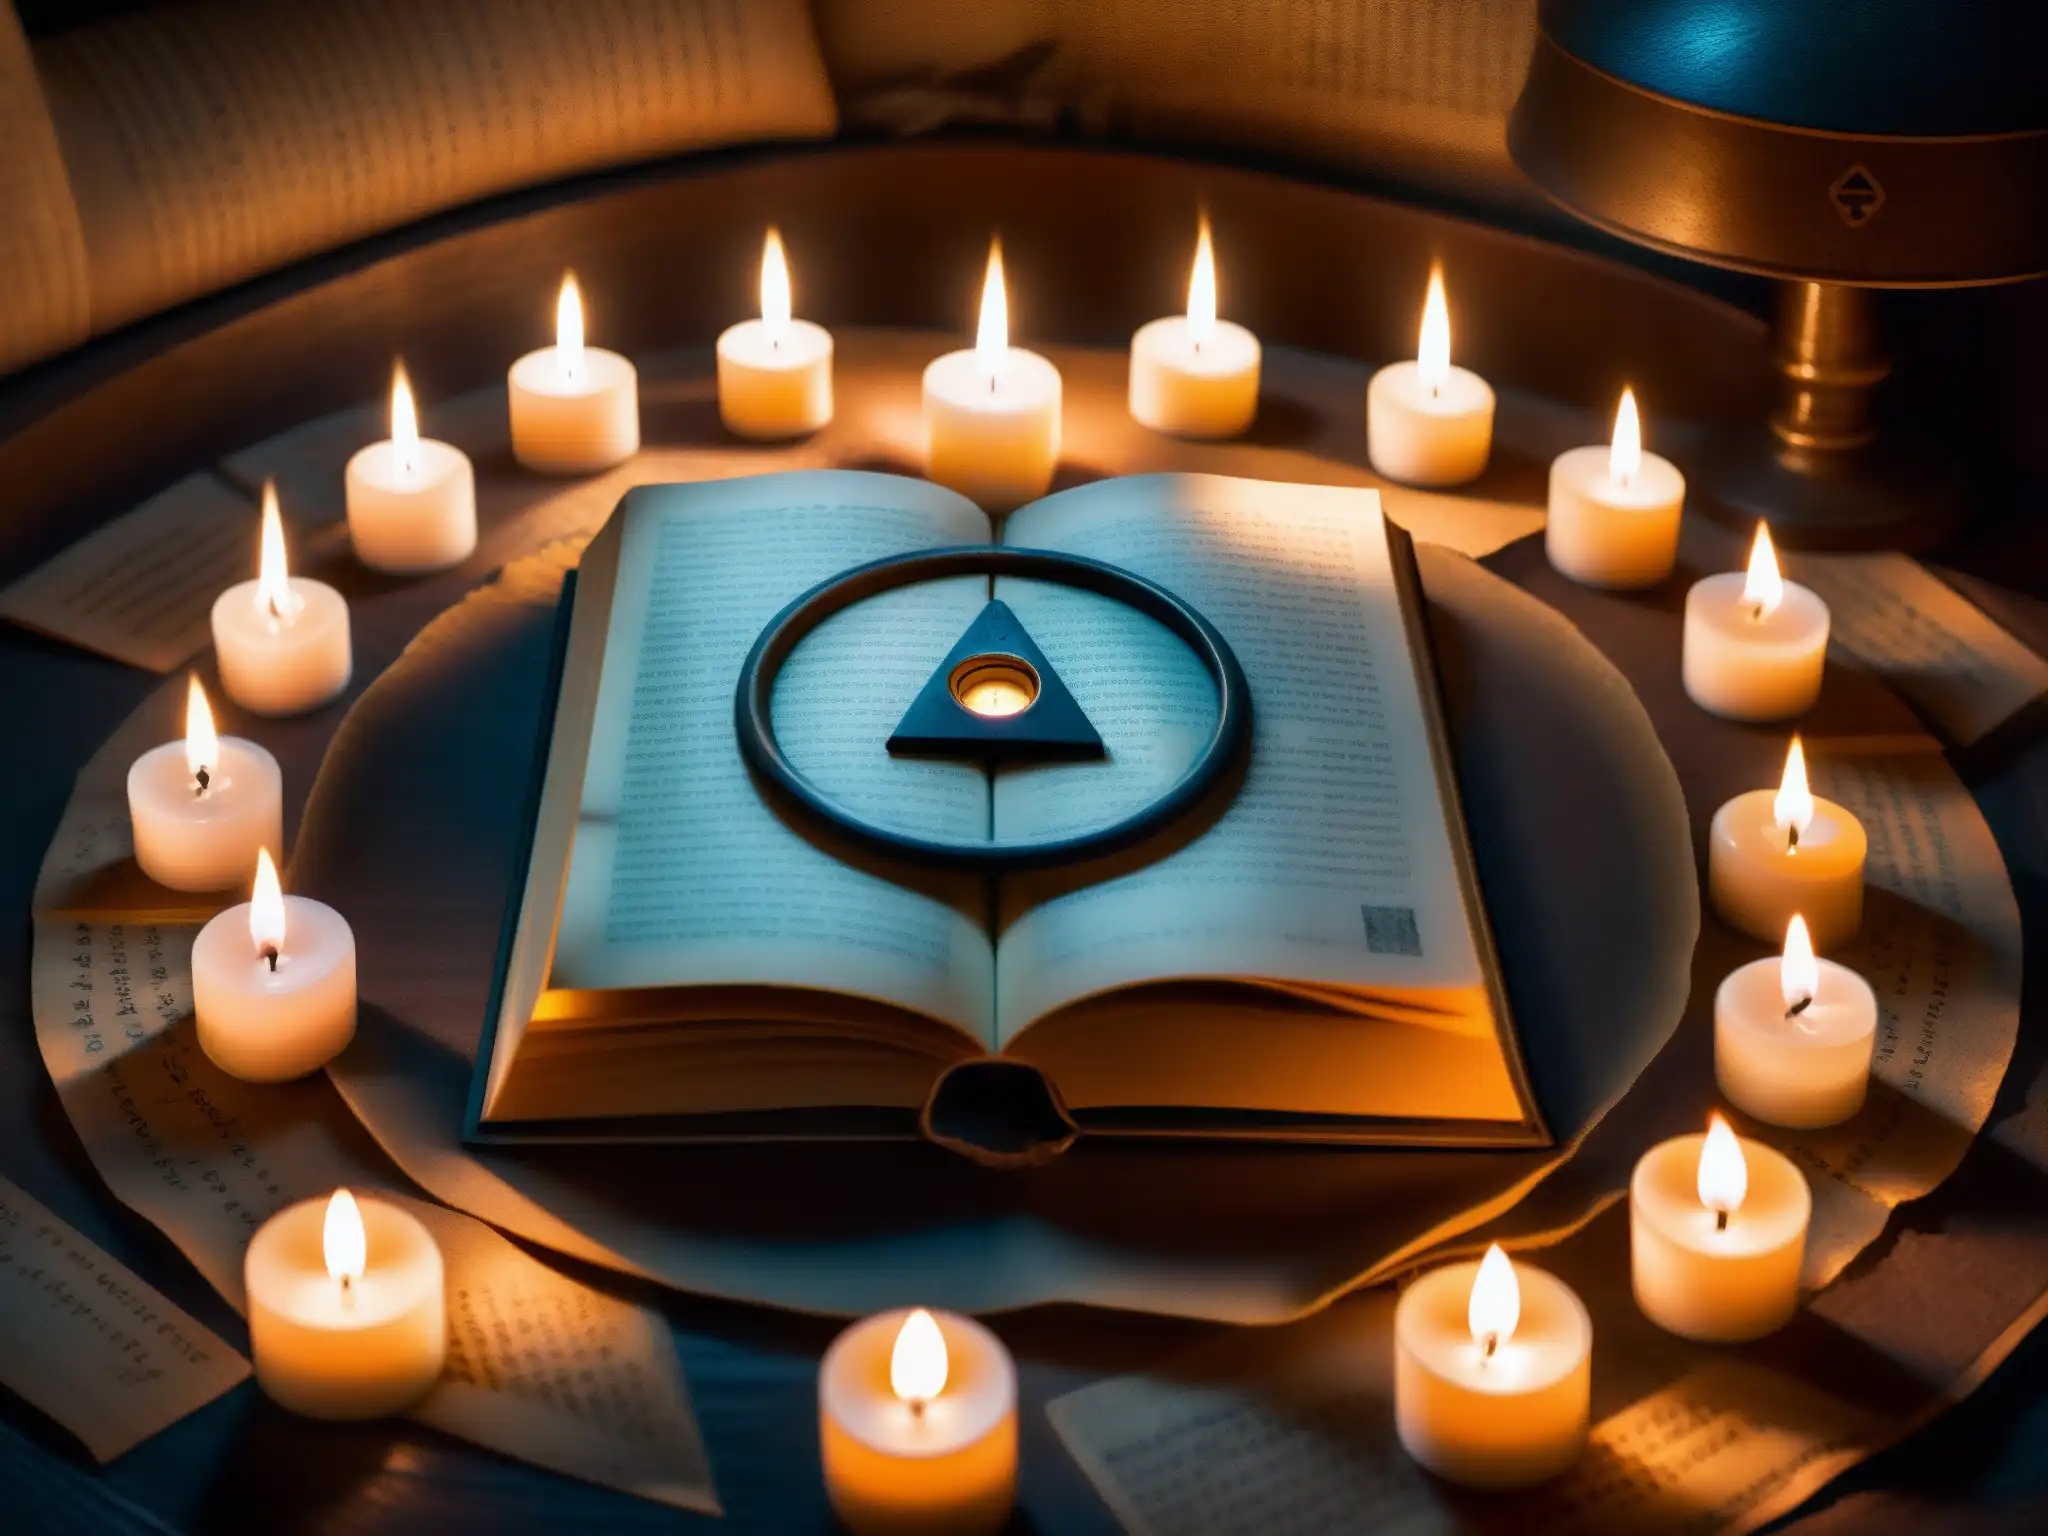 En una habitación tenue, un círculo de velas rodea símbolos misteriosos y un libro antiguo con escritura críptica